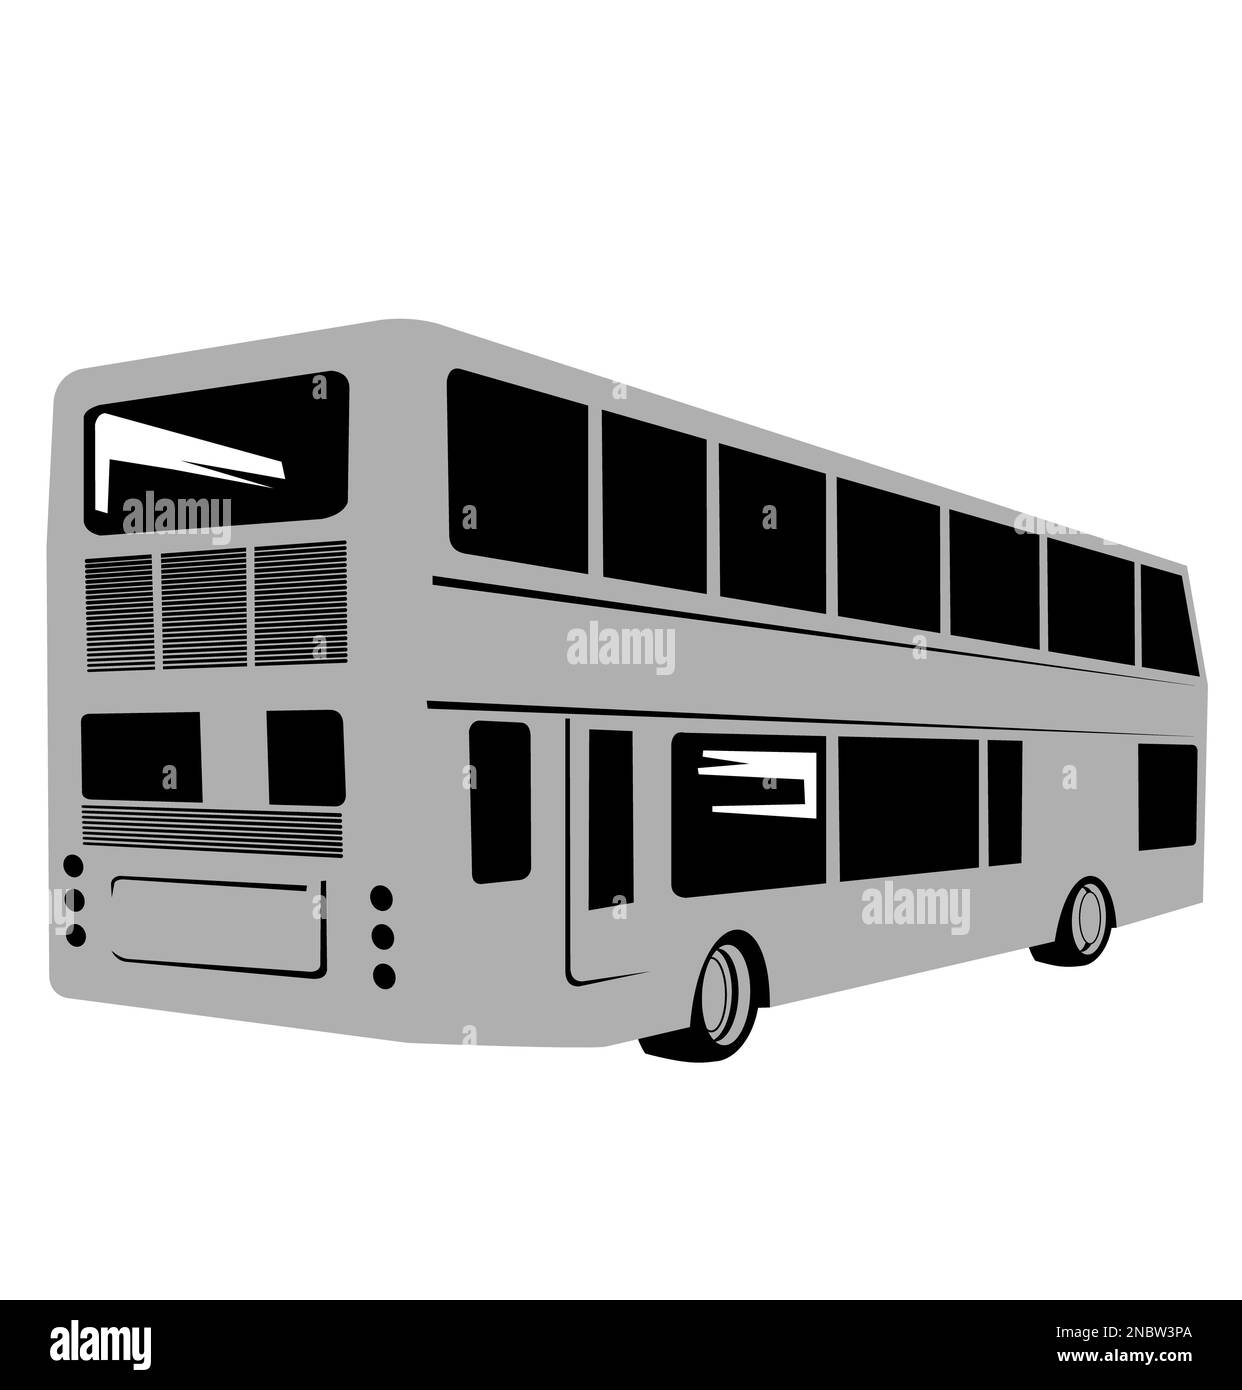 Immagine di un autobus a due piani o a due piani visto dal retro su sfondo isolato in stile legno retrò. Foto Stock